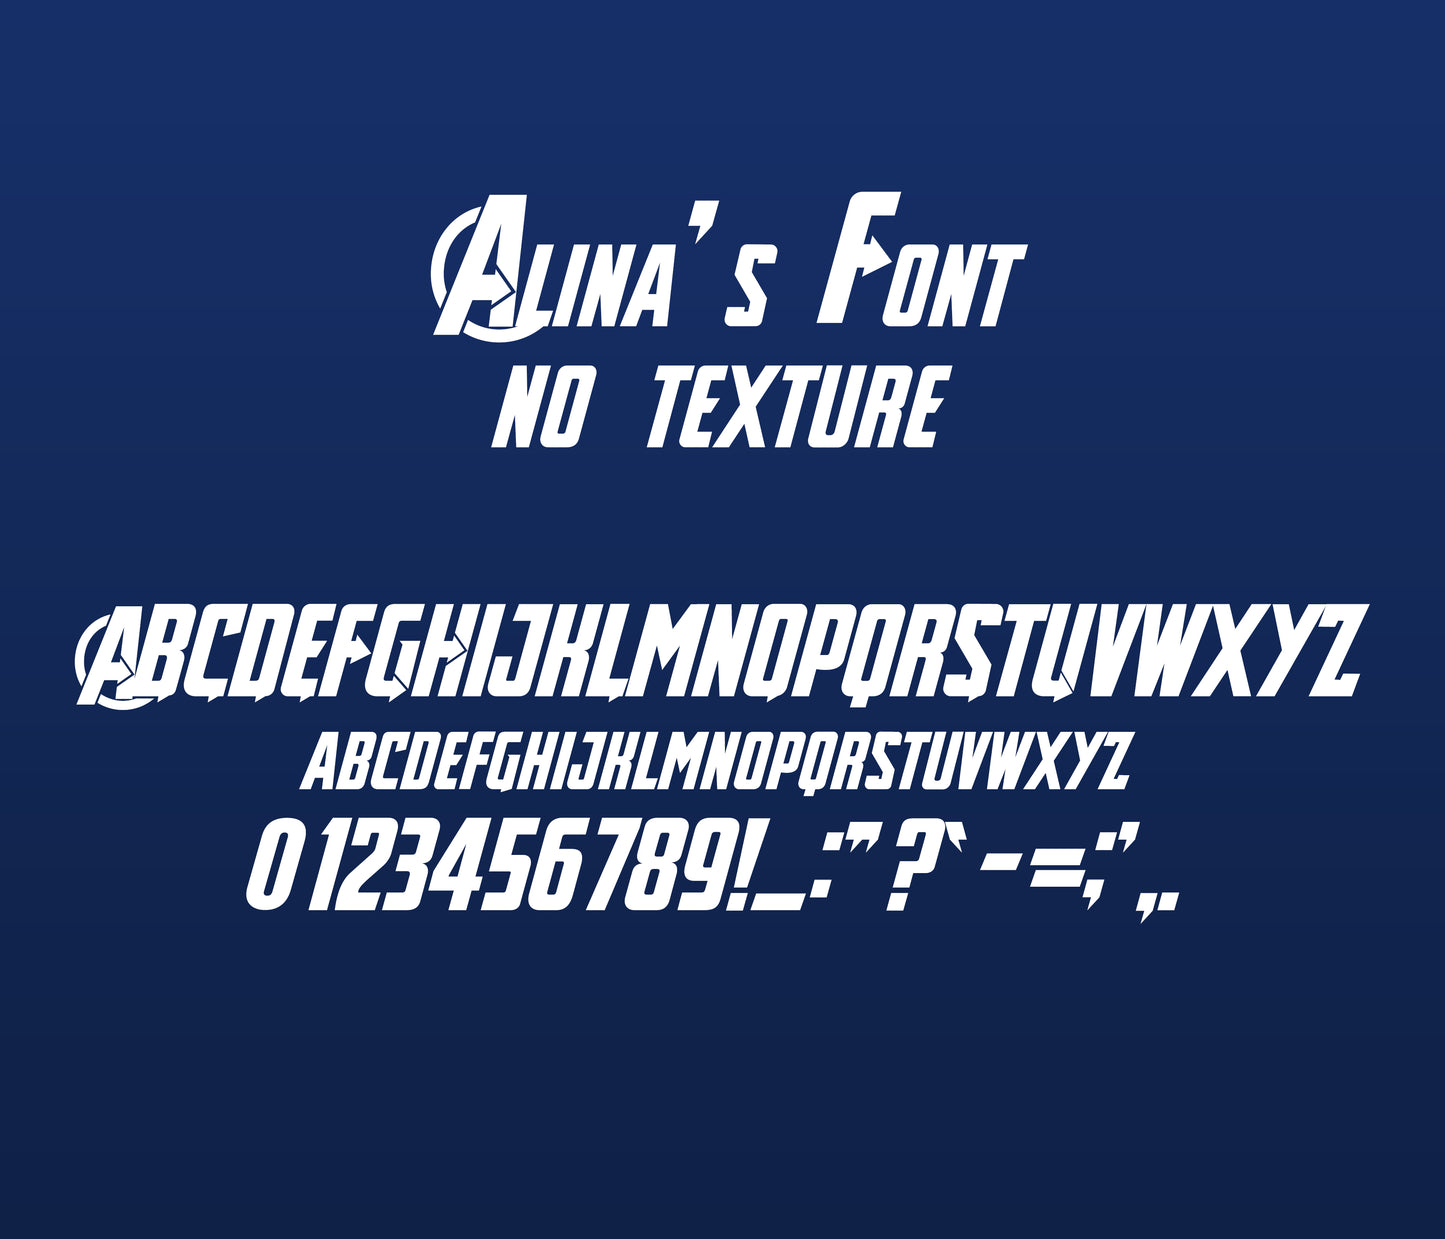 Avenger Infinity War Textured Bitmap Font